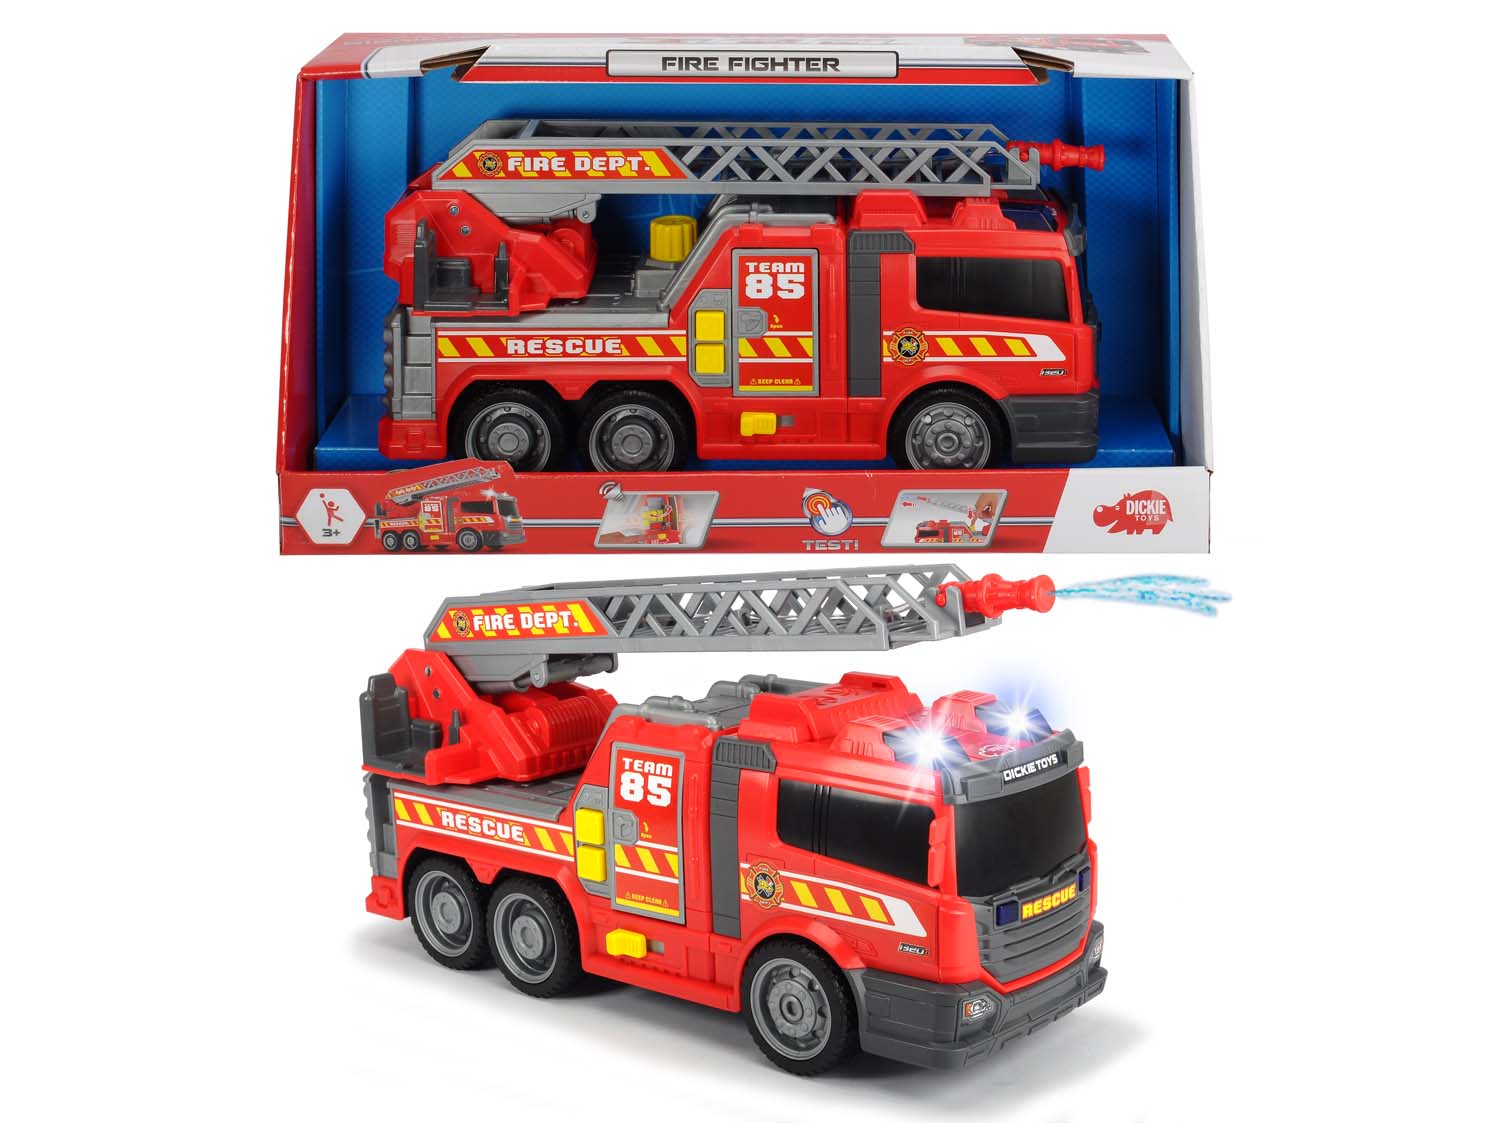 Merchandising Dickie Toys: Action Series - Camion Dei Pompieri 36 Cm Con Funzione Getto D'Acqua, Luci E Suoni NUOVO SIGILLATO, EDIZIONE DEL 27/09/2017 SUBITO DISPONIBILE